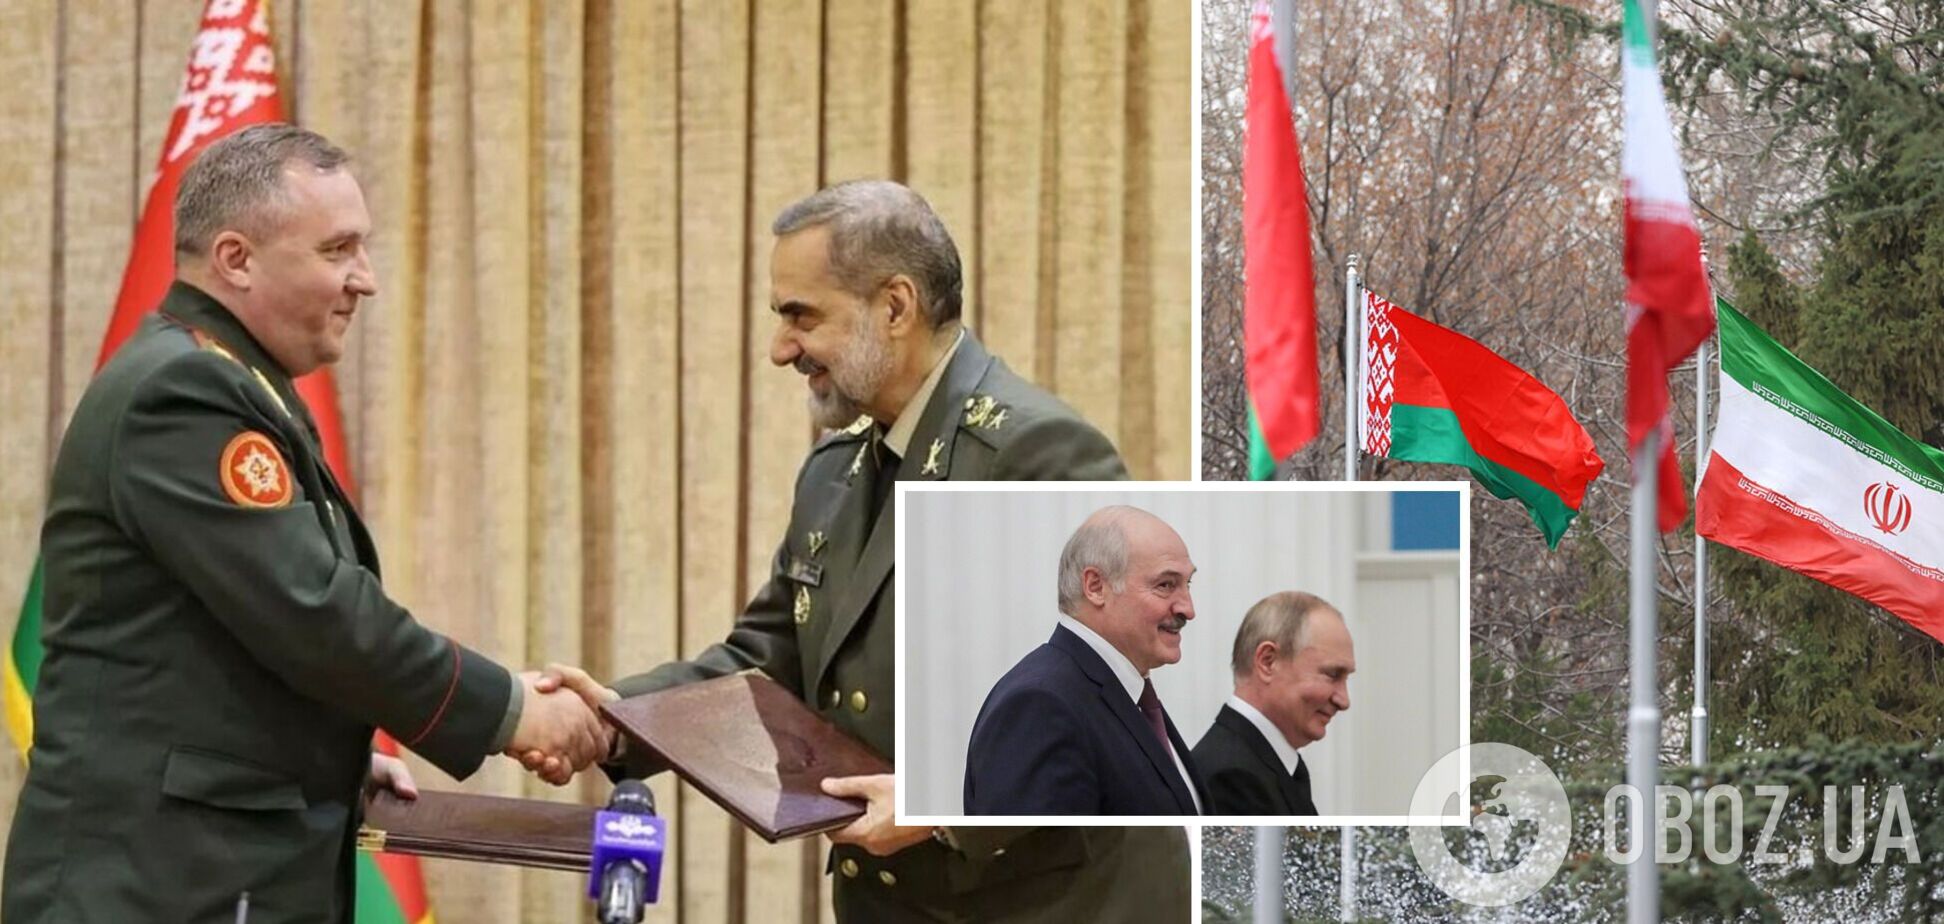 Иран и Беларусь договорились усилить военное сотрудничество: что это значит